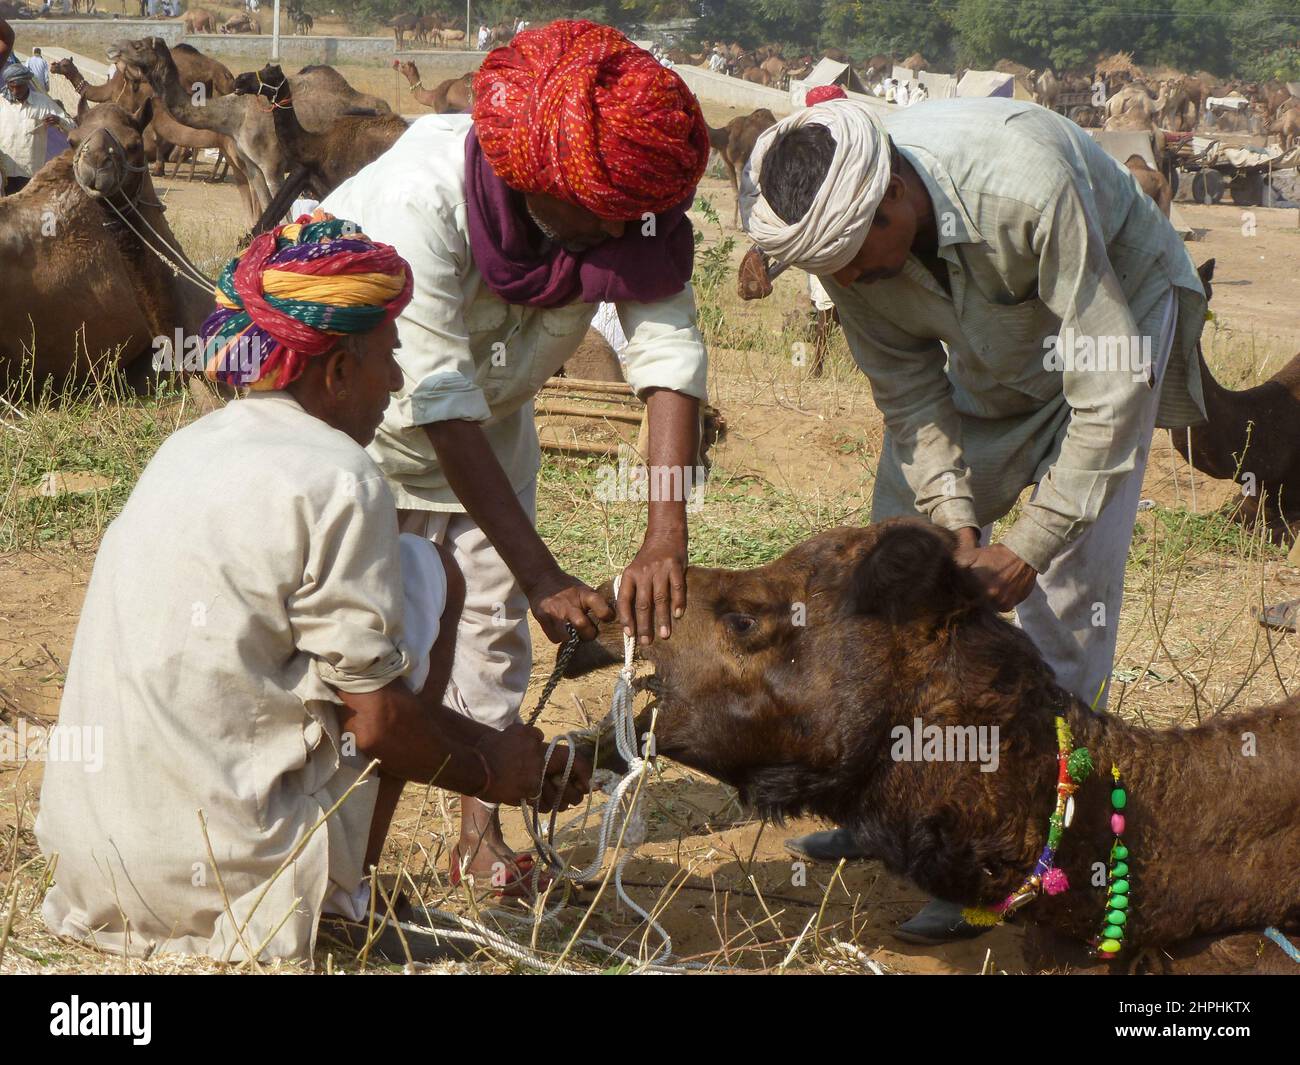 Feria de camellos en Pushkar, Rajastan, India Foto de stock